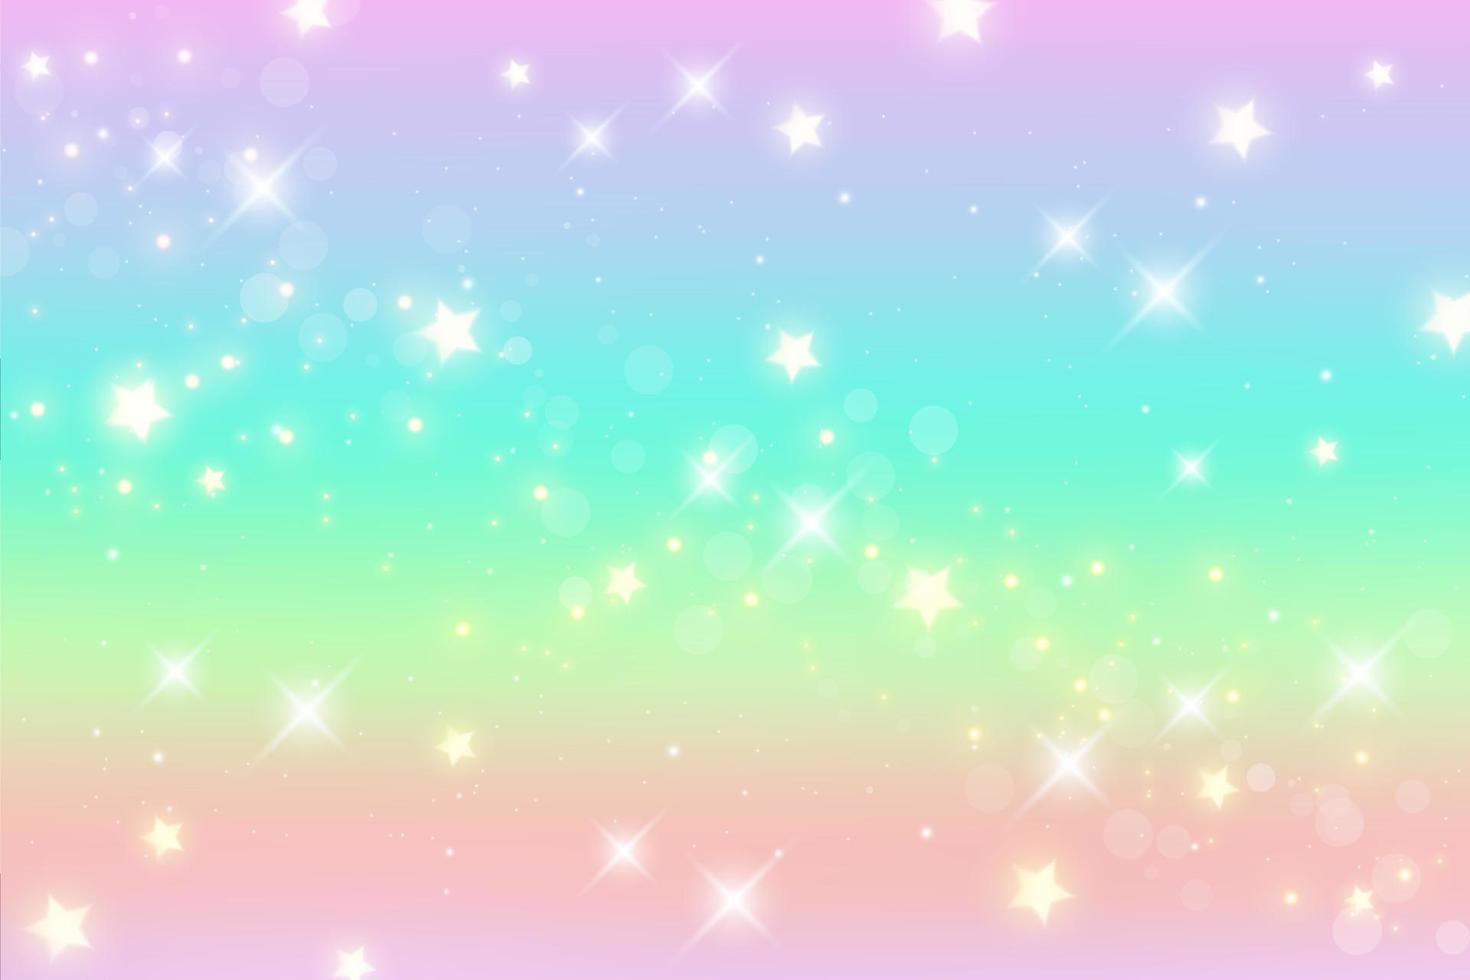 regnbåge fantasi bakgrund. holografisk illustration i pastellfärger. söt tecknad tjejig tapet. ljus mångfärgad himmel med stjärnor. vektor. vektor